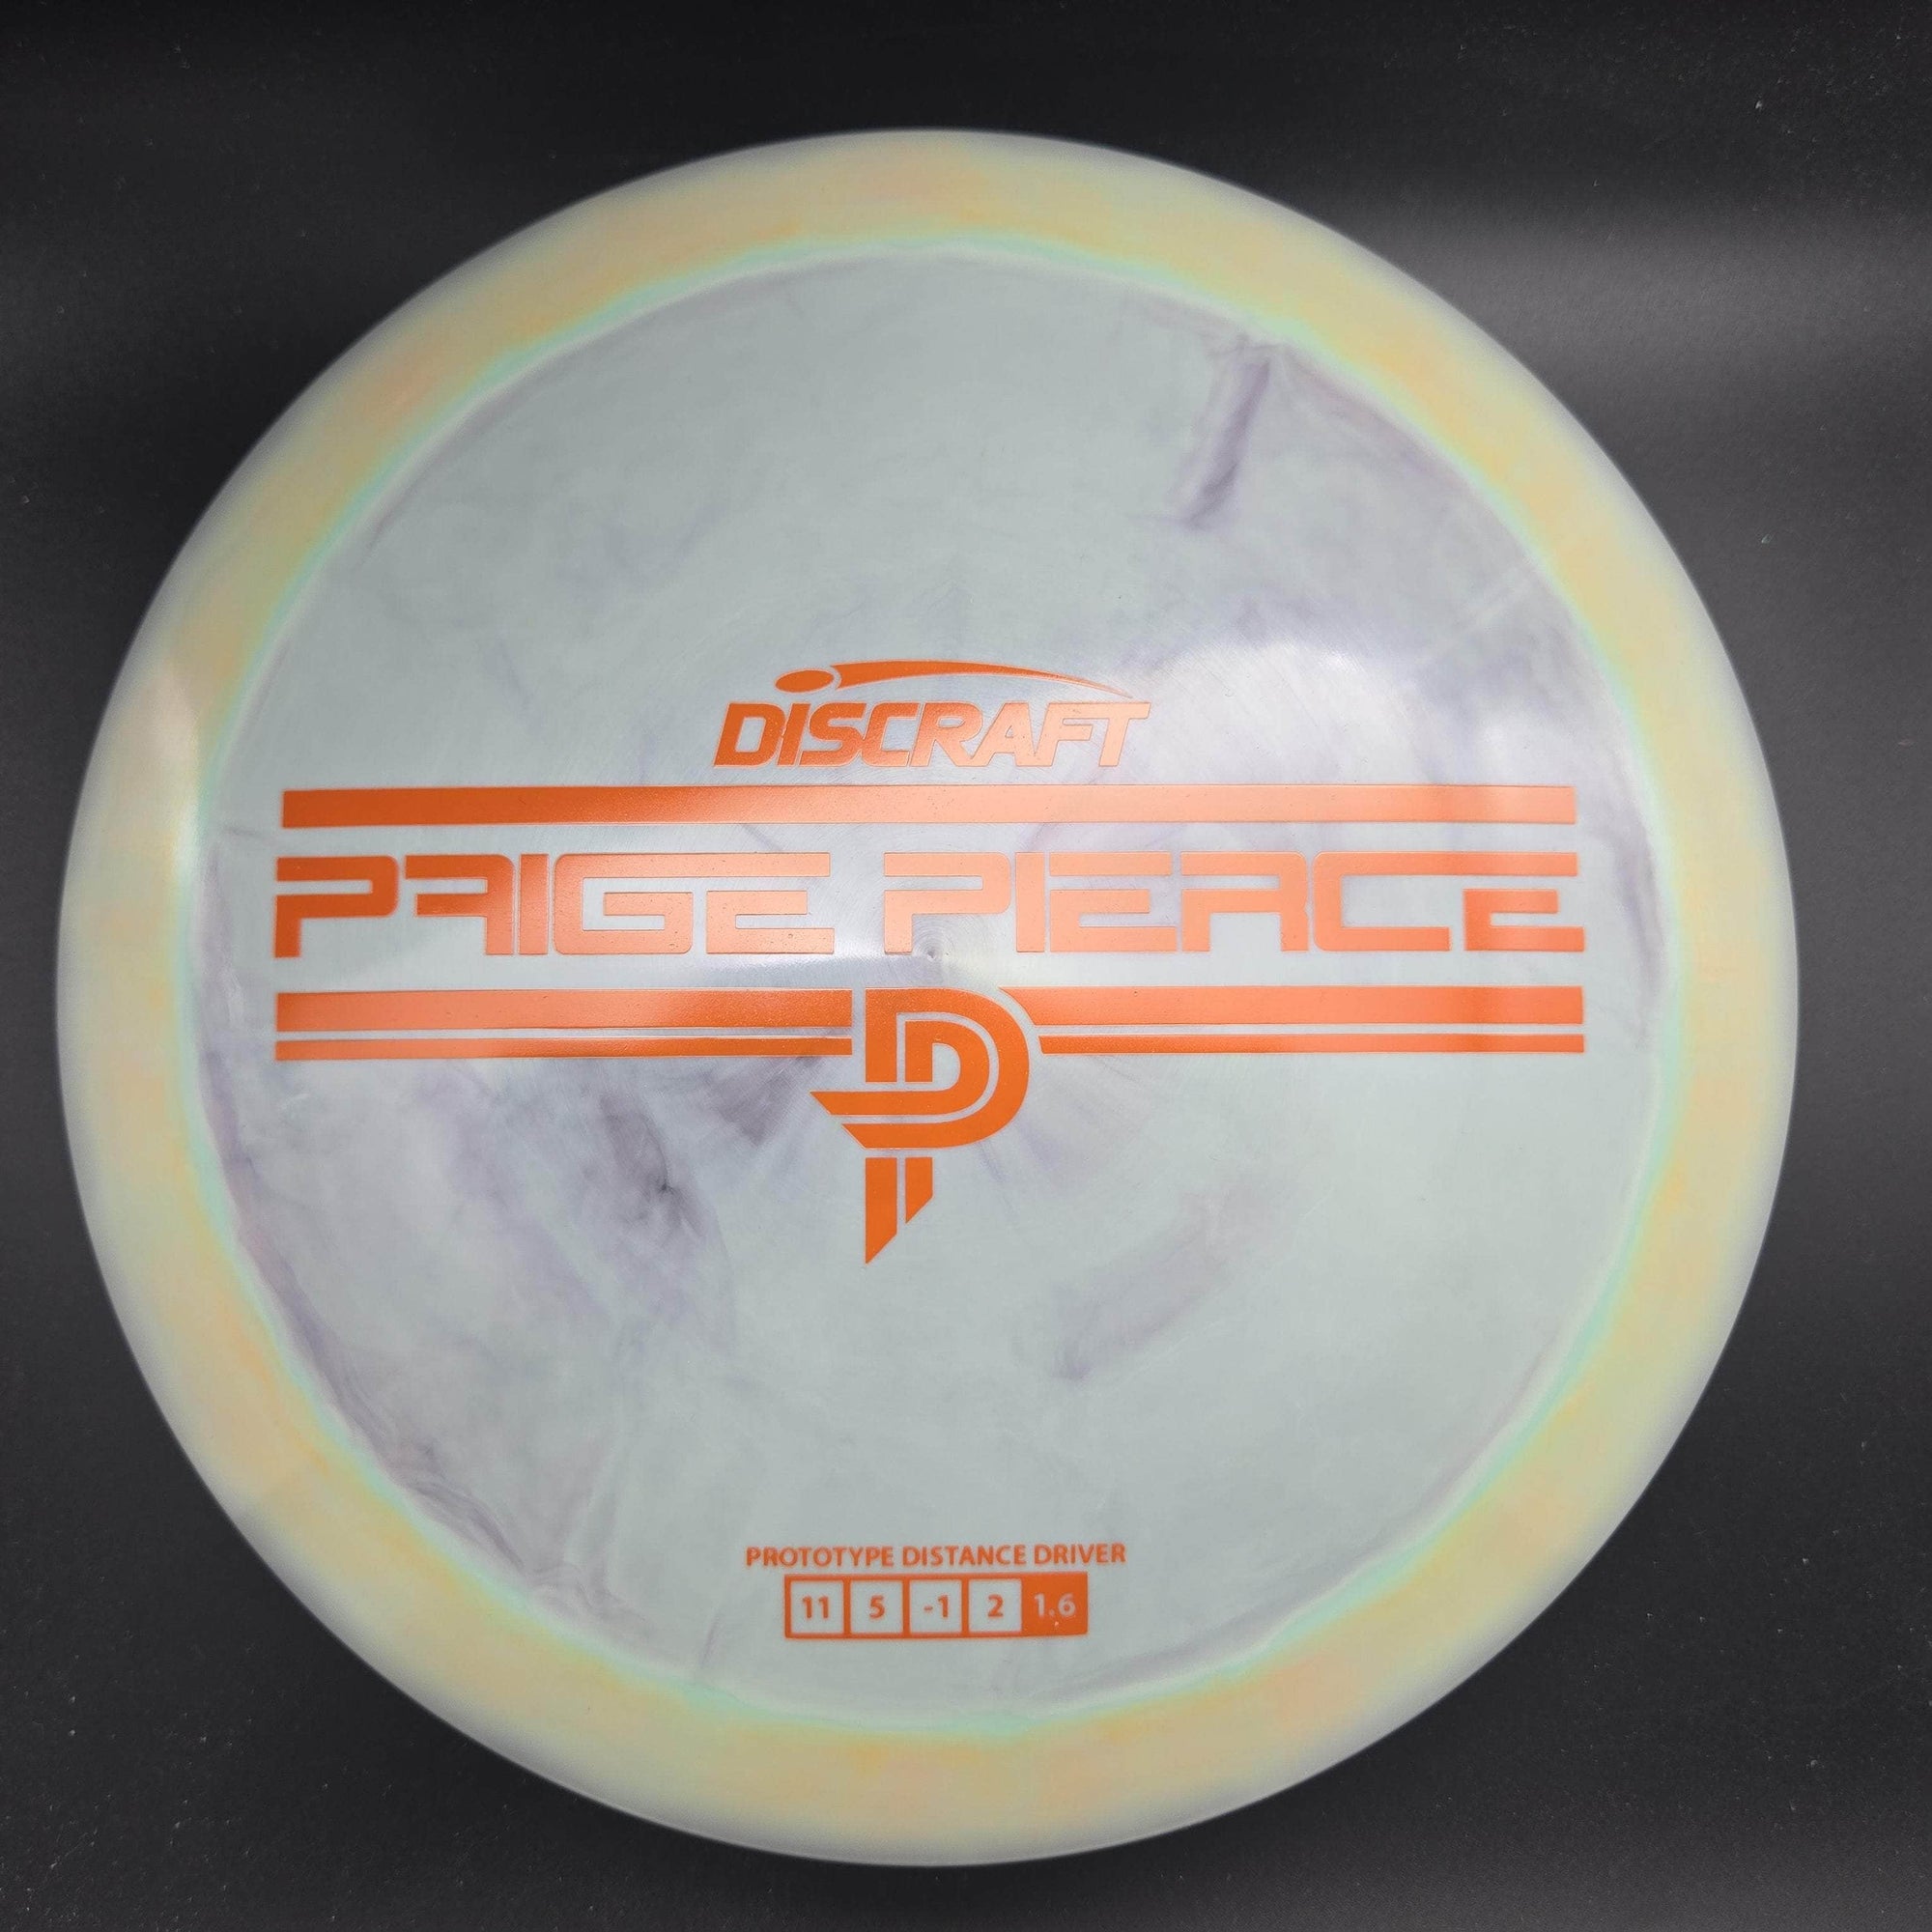 Discraft Distance Driver Drive, ESP, Paige Pierce Prototype